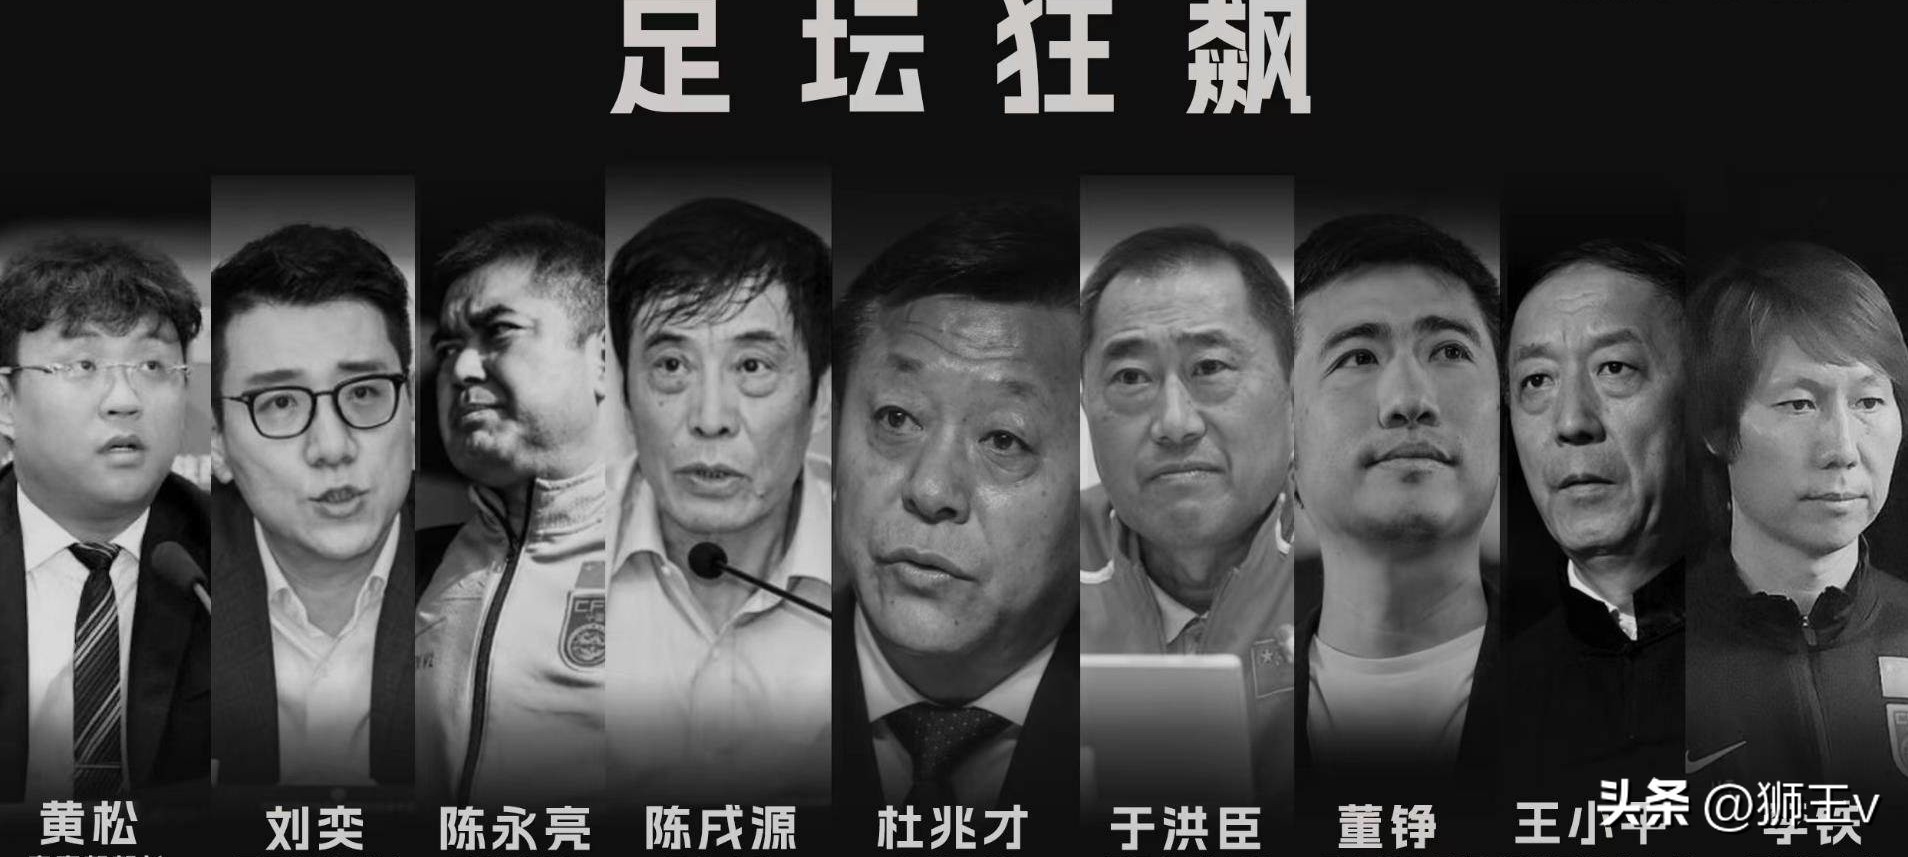 中国足协几乎一锅端，最受争议的裁判为何平安无事？反腐还在路上